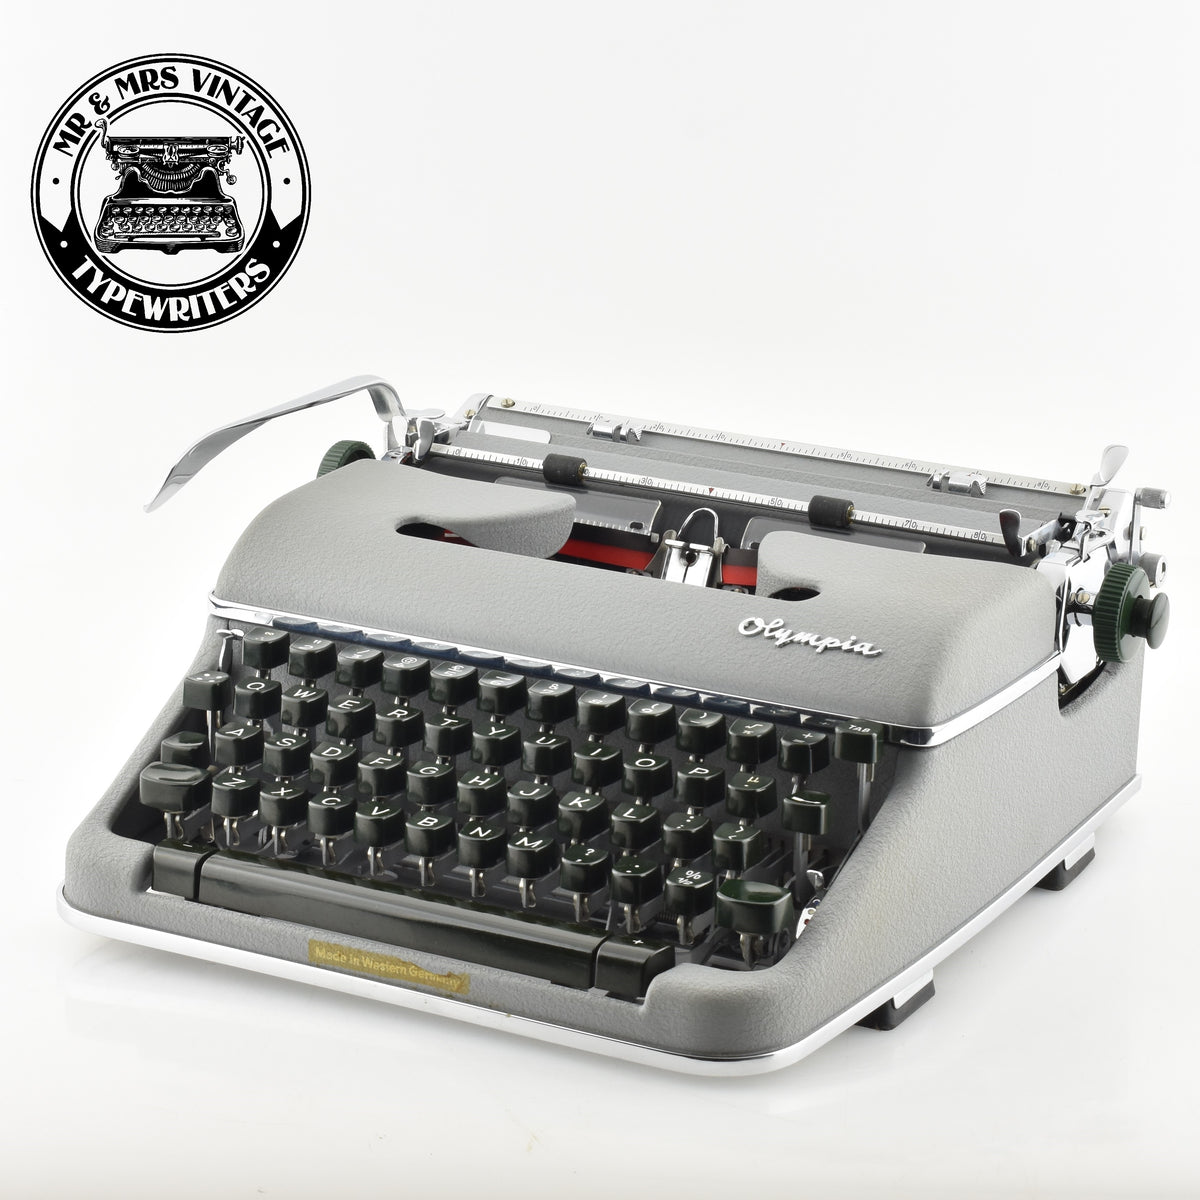 olympia sm4 s manual typewriter